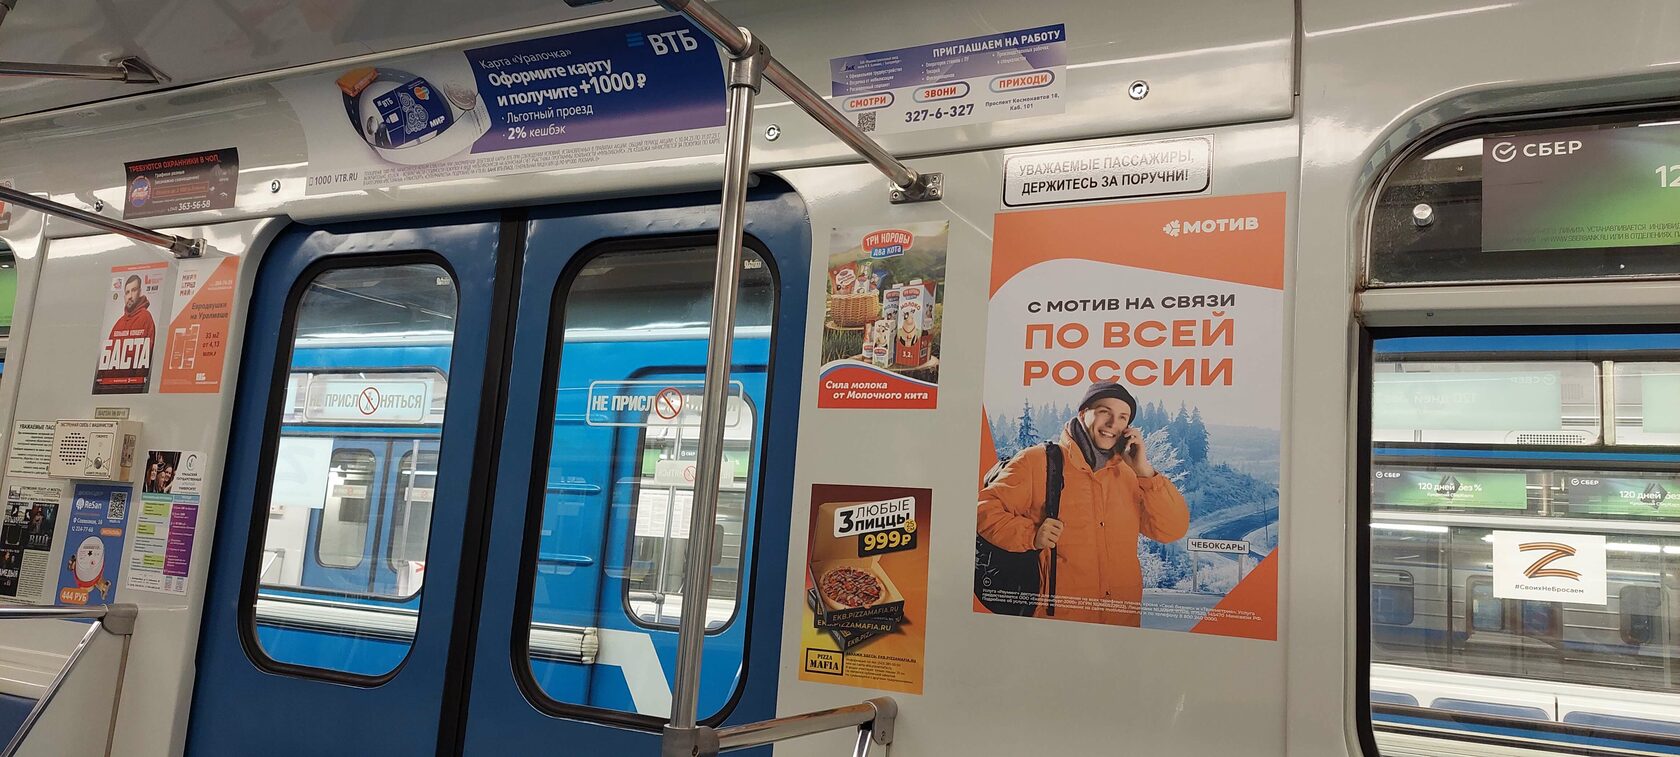 Лучшая реклама в метро